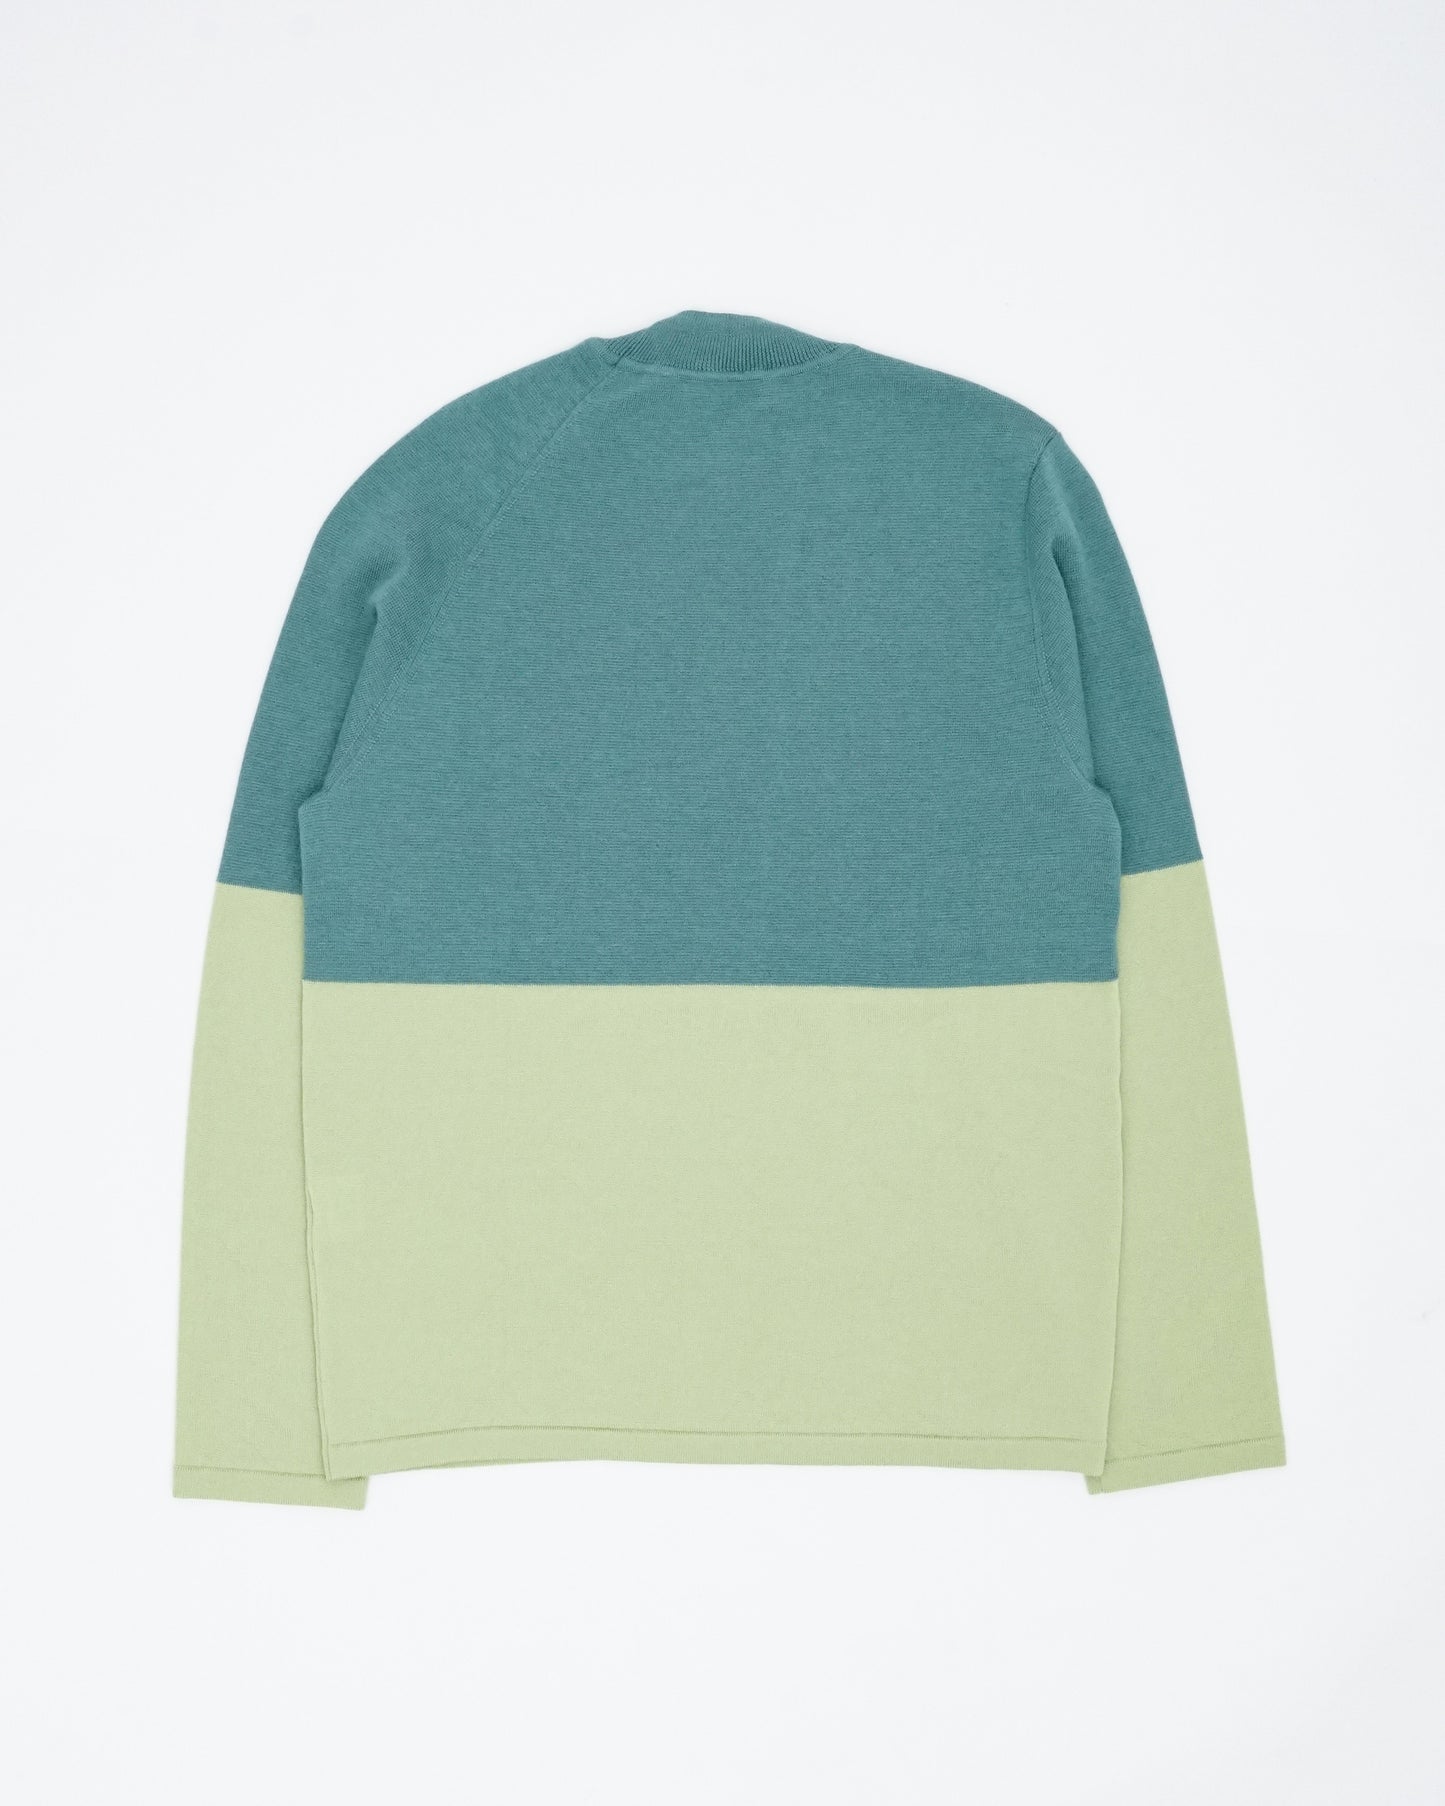 Bicolour Pullover Knit(Green×L.Green)